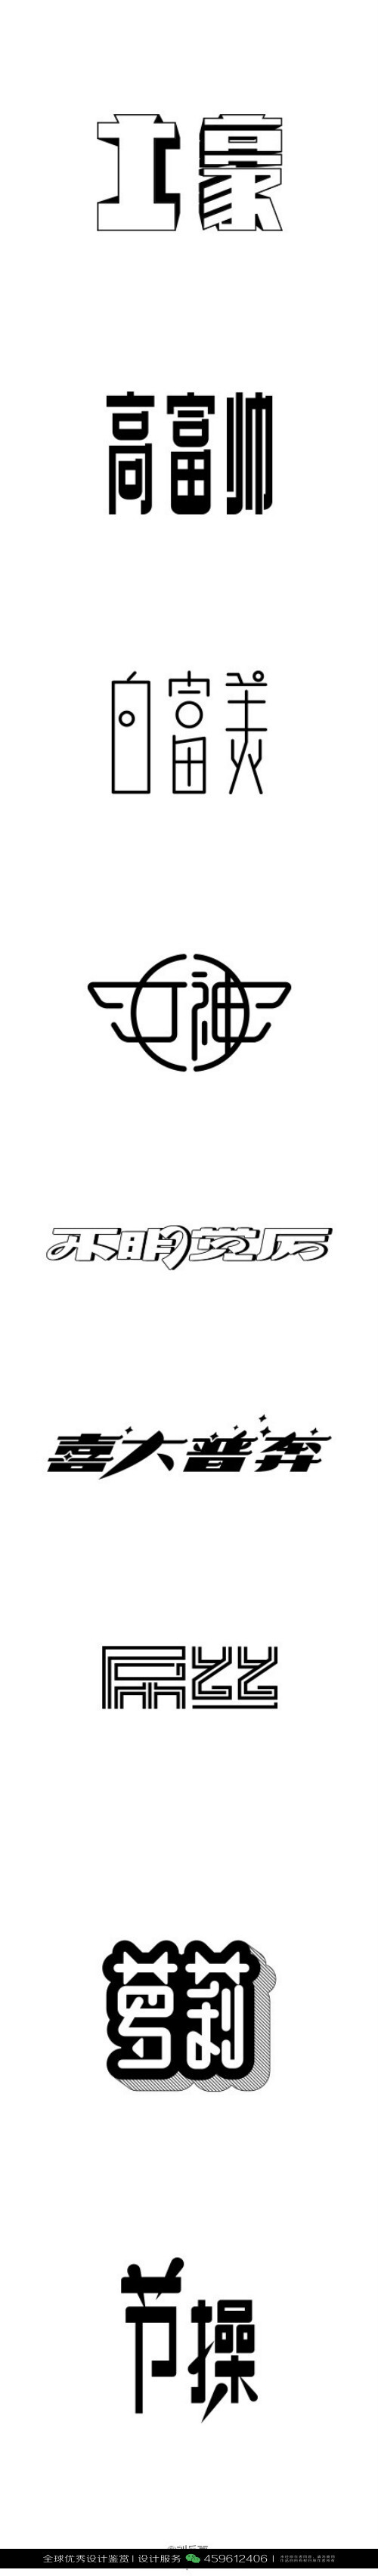 字体设计汉字中文优秀logo设计标志品牌设计作品 981 堆糖 美图壁纸兴趣社区